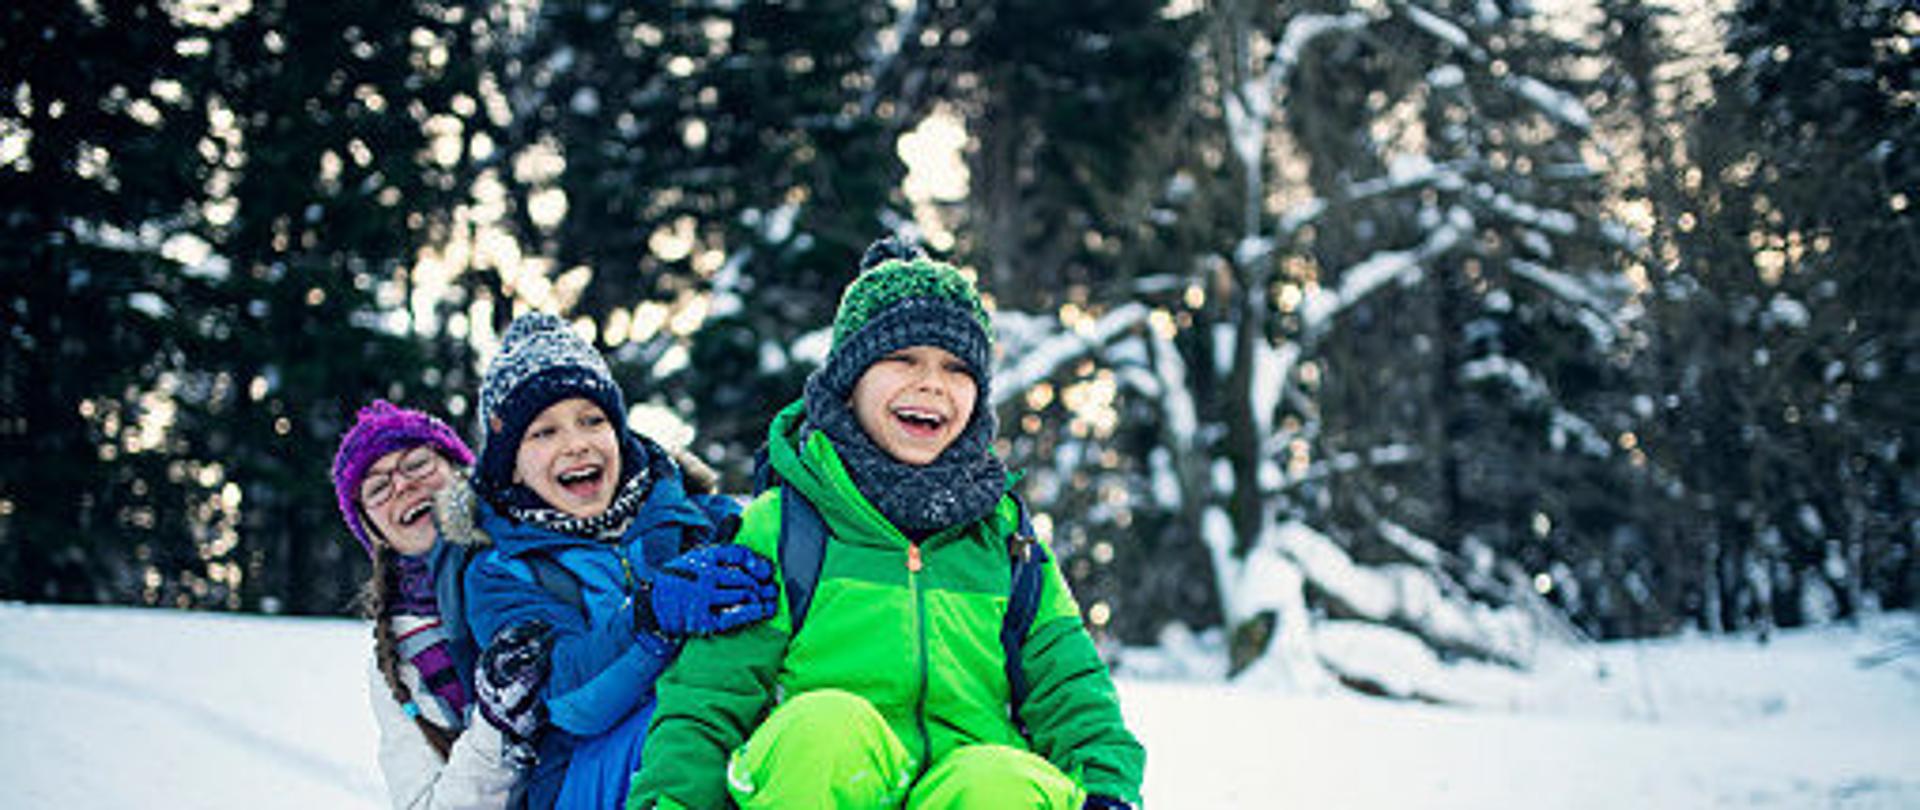 Troje dzieci na sankach w śnieżnym zimowym lesie.